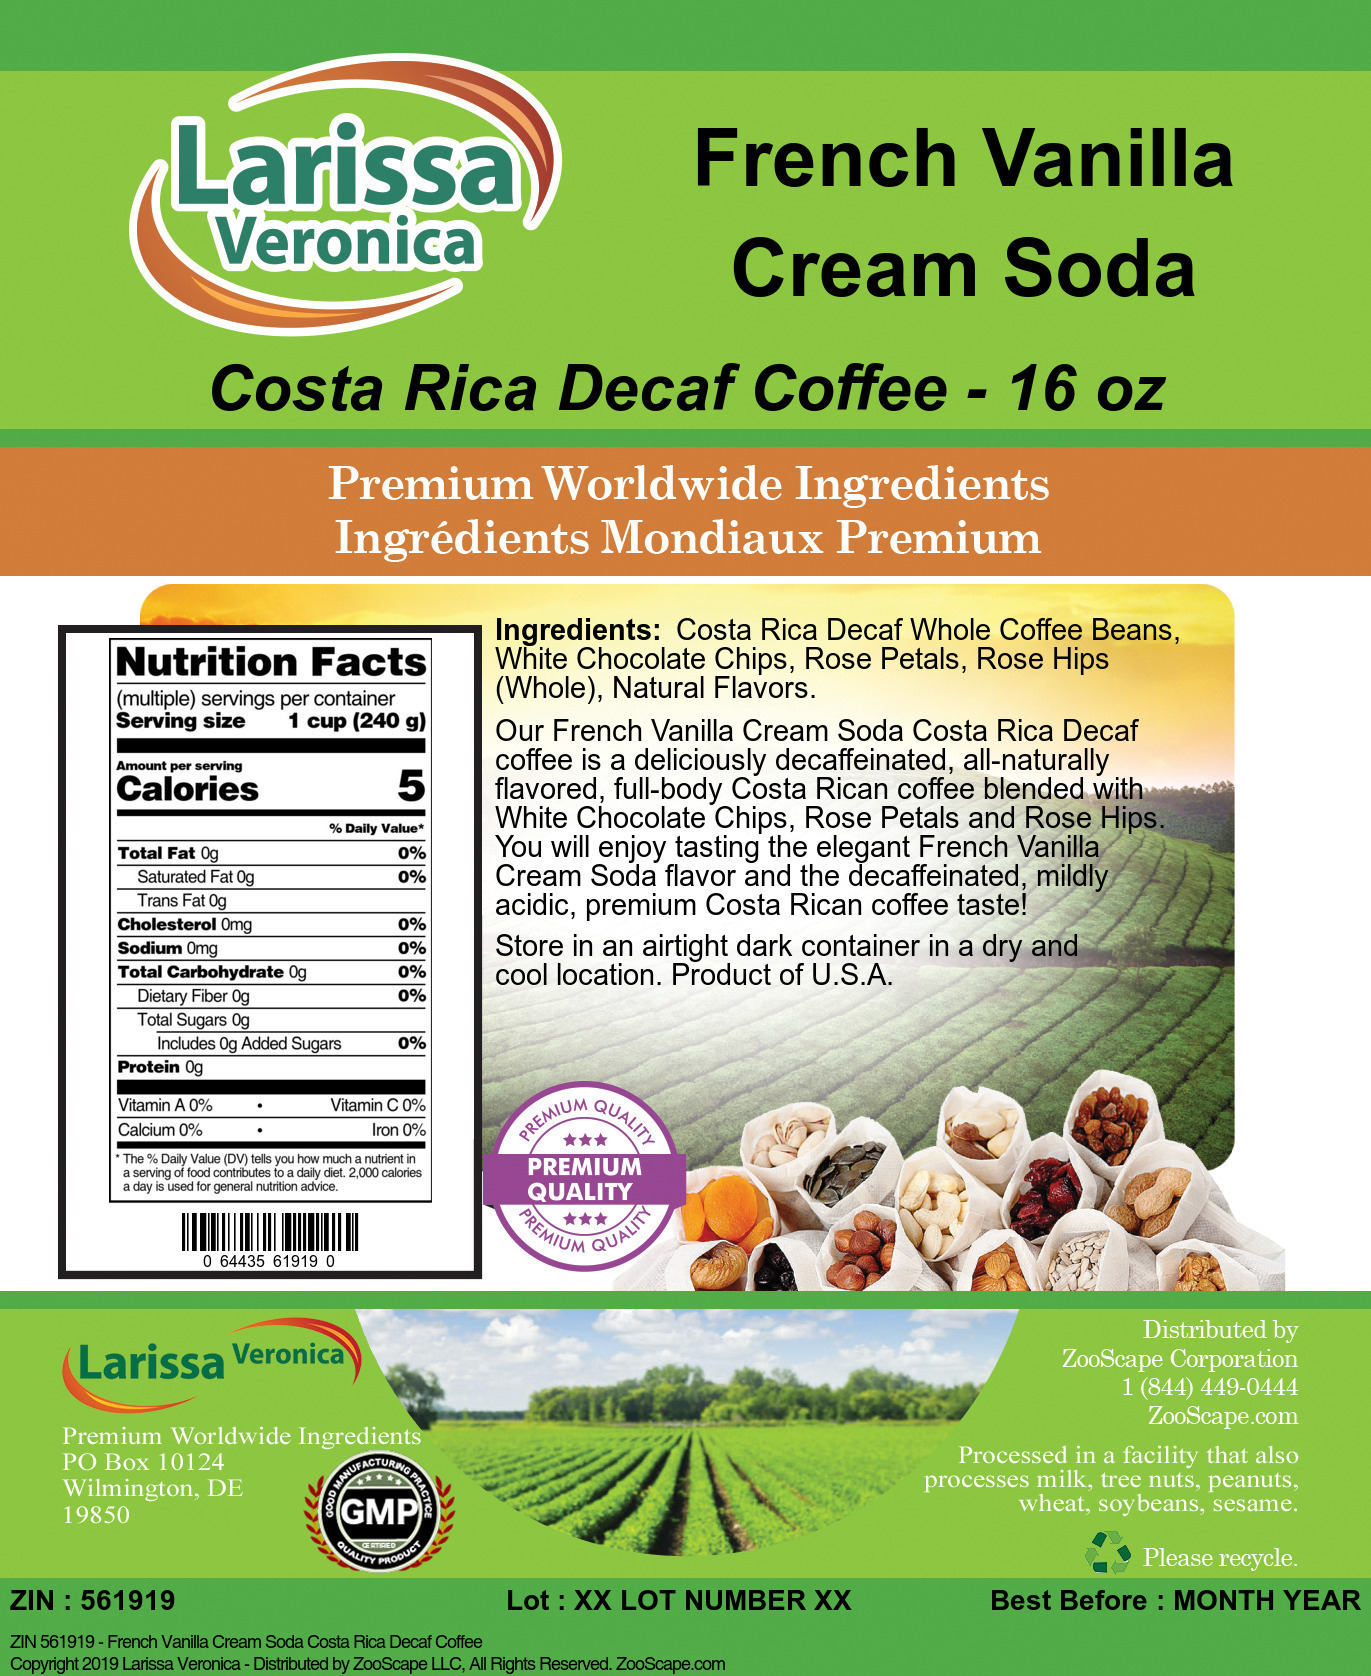 French Vanilla Cream Soda Costa Rica Decaf Coffee - Label